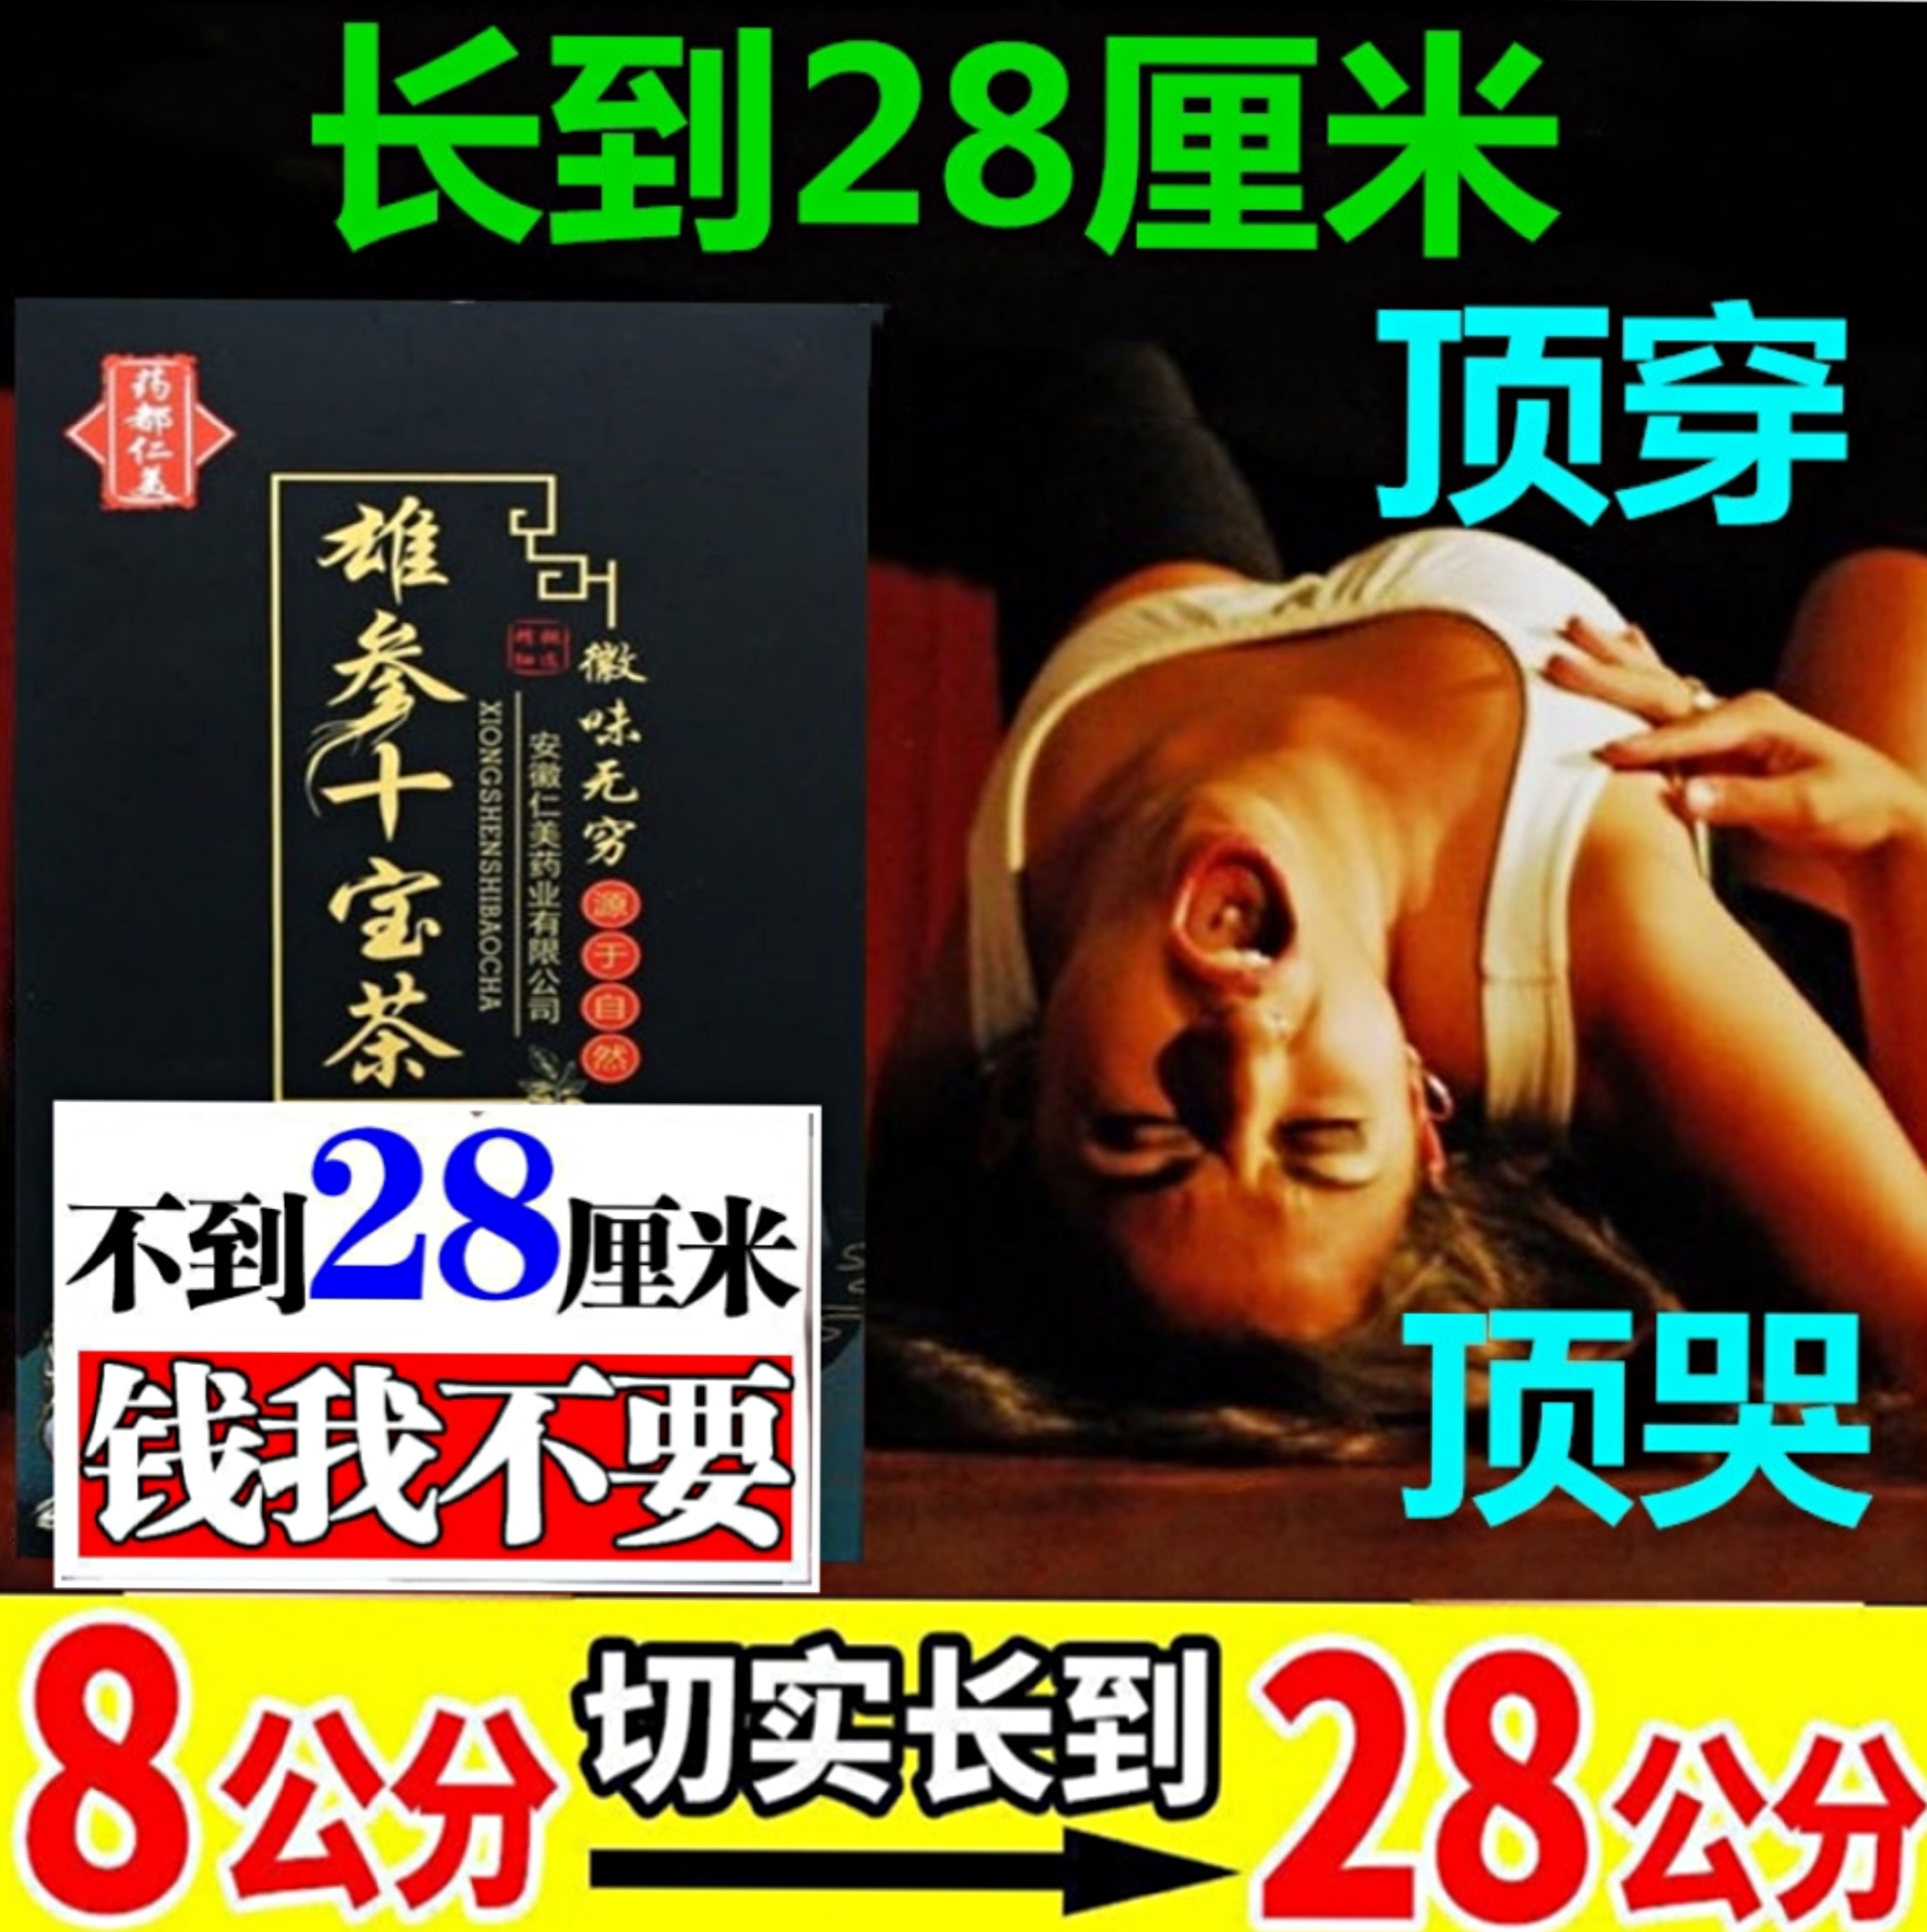 ชายโสมสิบสมบัติชาโสม Huangjing กวางแส้ยาวนานทองปืนชาร่างกายห้าสมบัติอยู่ถึงคืนสุขภาพไตชาชายสุขภาพ